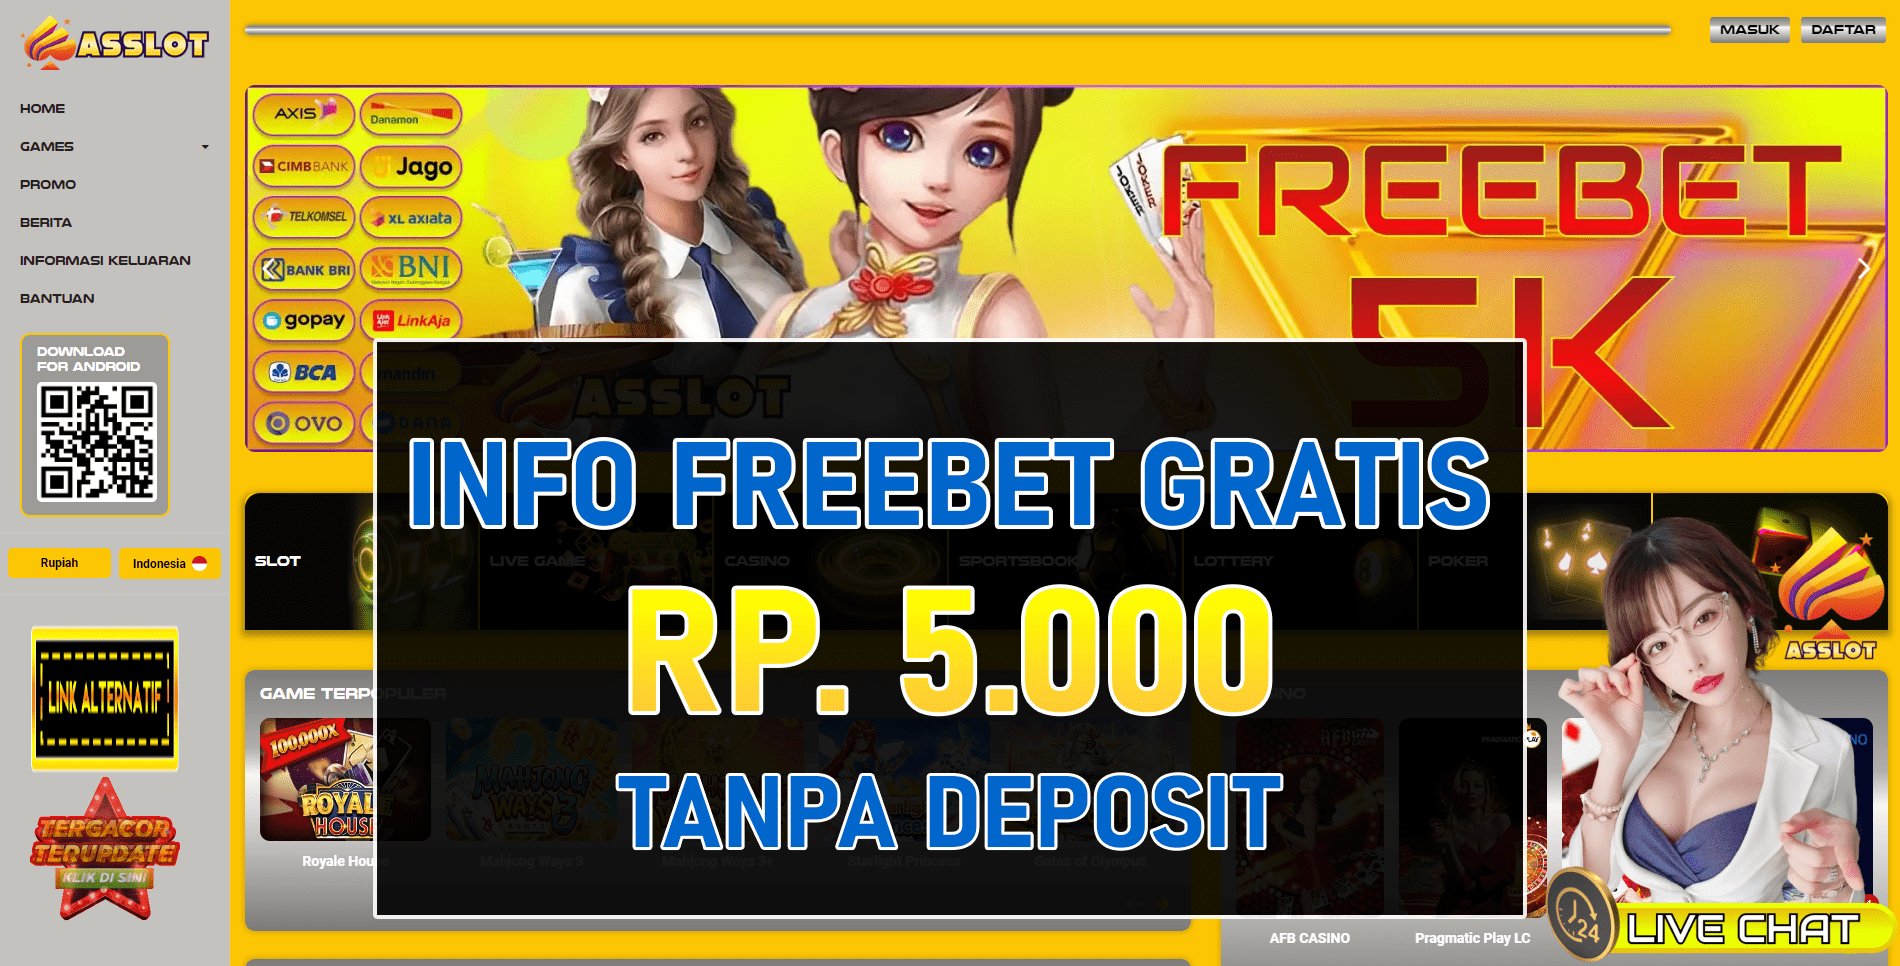 Asslot Freebet Gratis Tanpa Deposit Terbaru